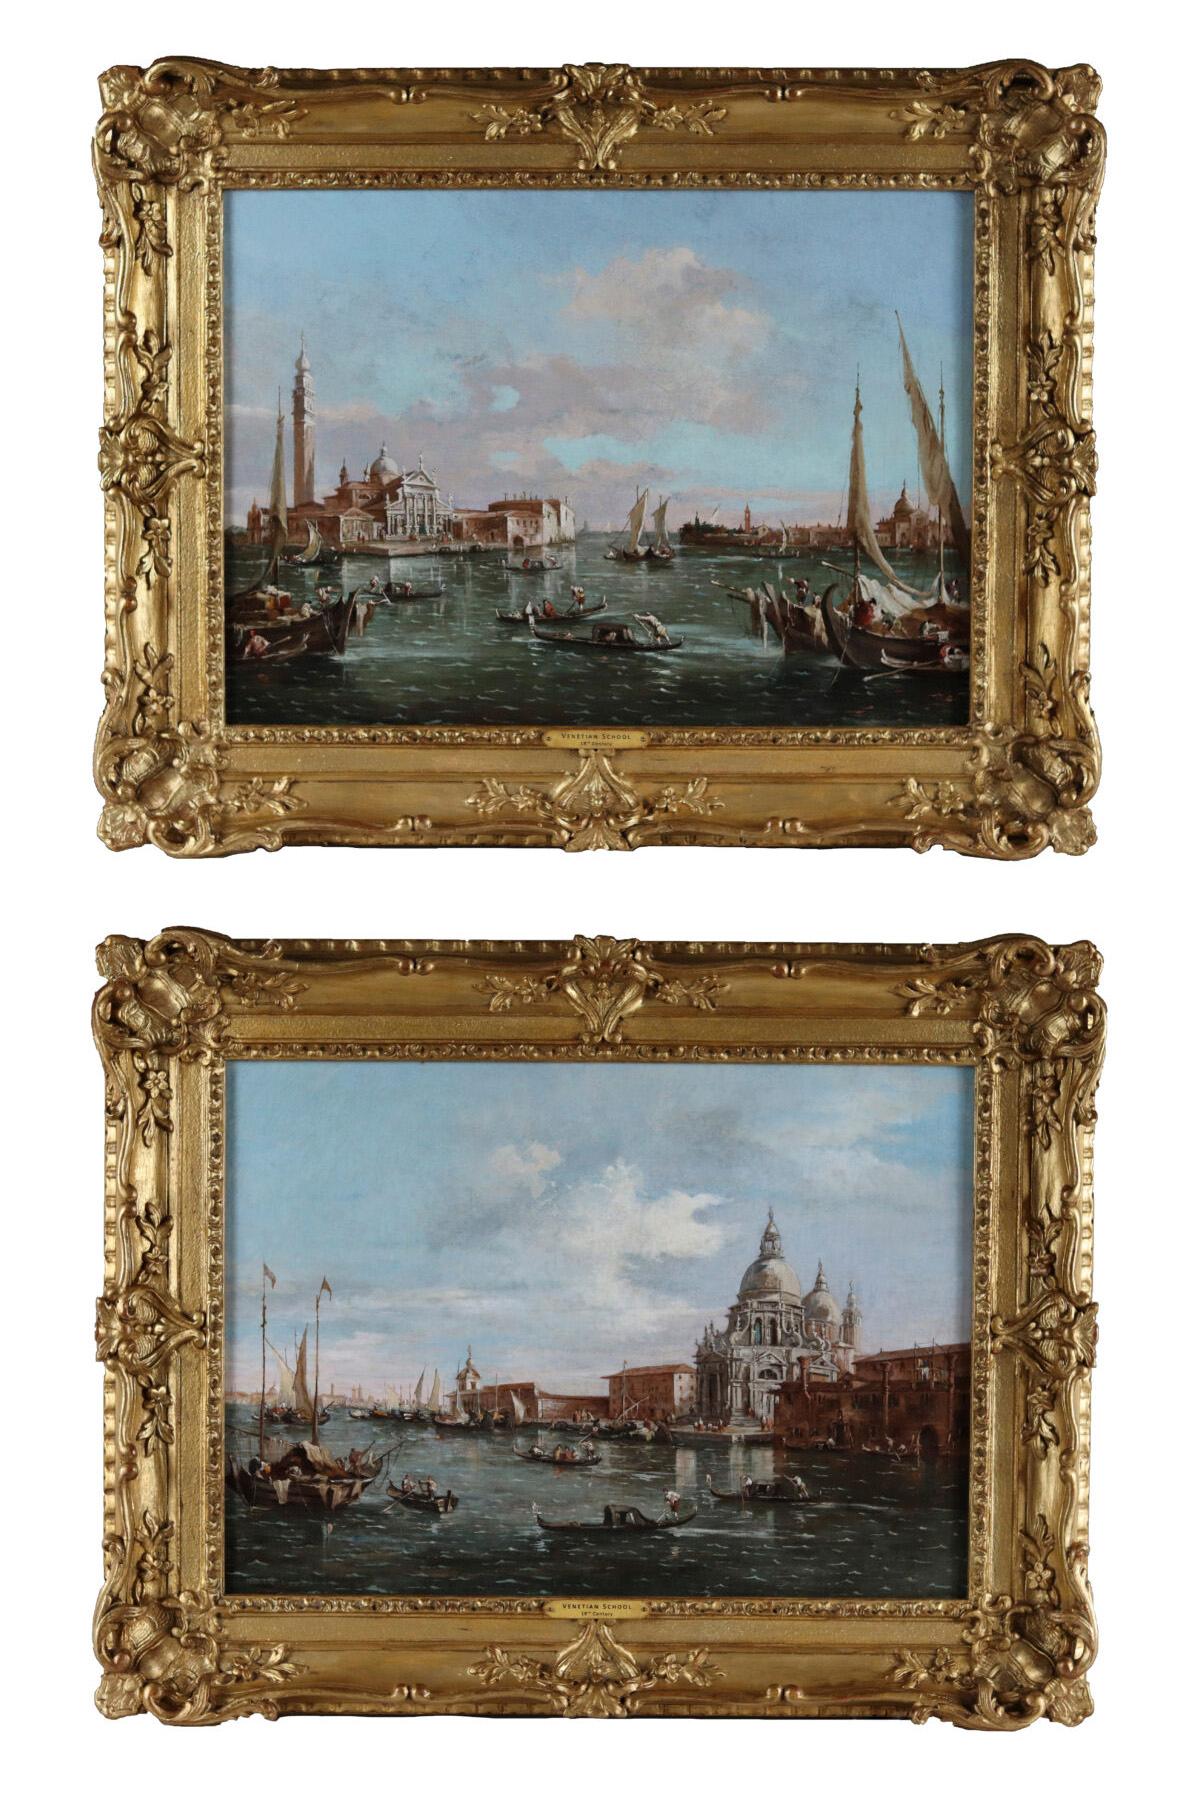 Landscape Painting 18th Century Italian School - Paire de scènes de canaux vénitiens du XVIIIe siècle dans le style de Francesco Guardi  